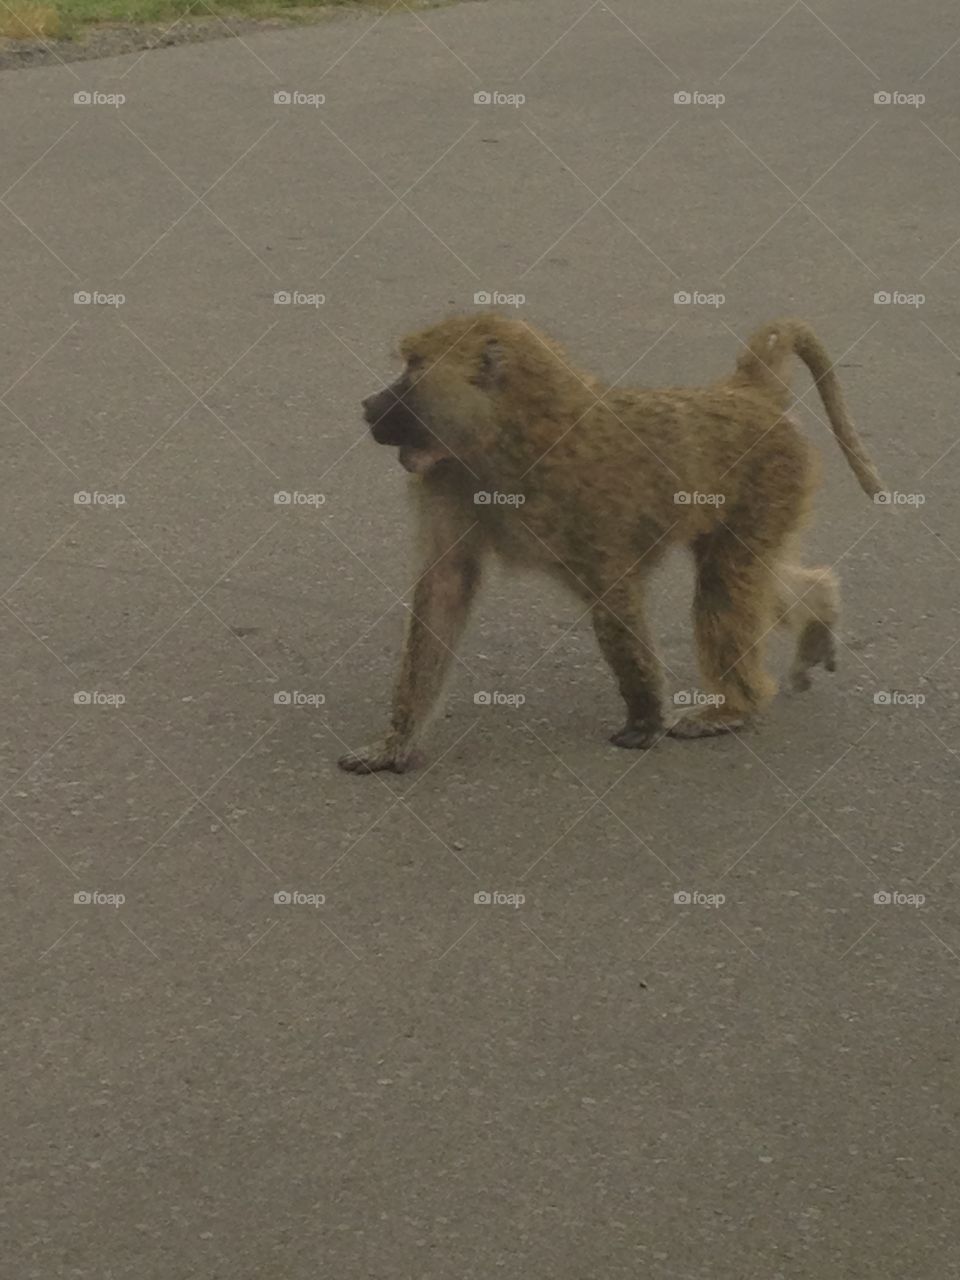 Monkey on Safari
